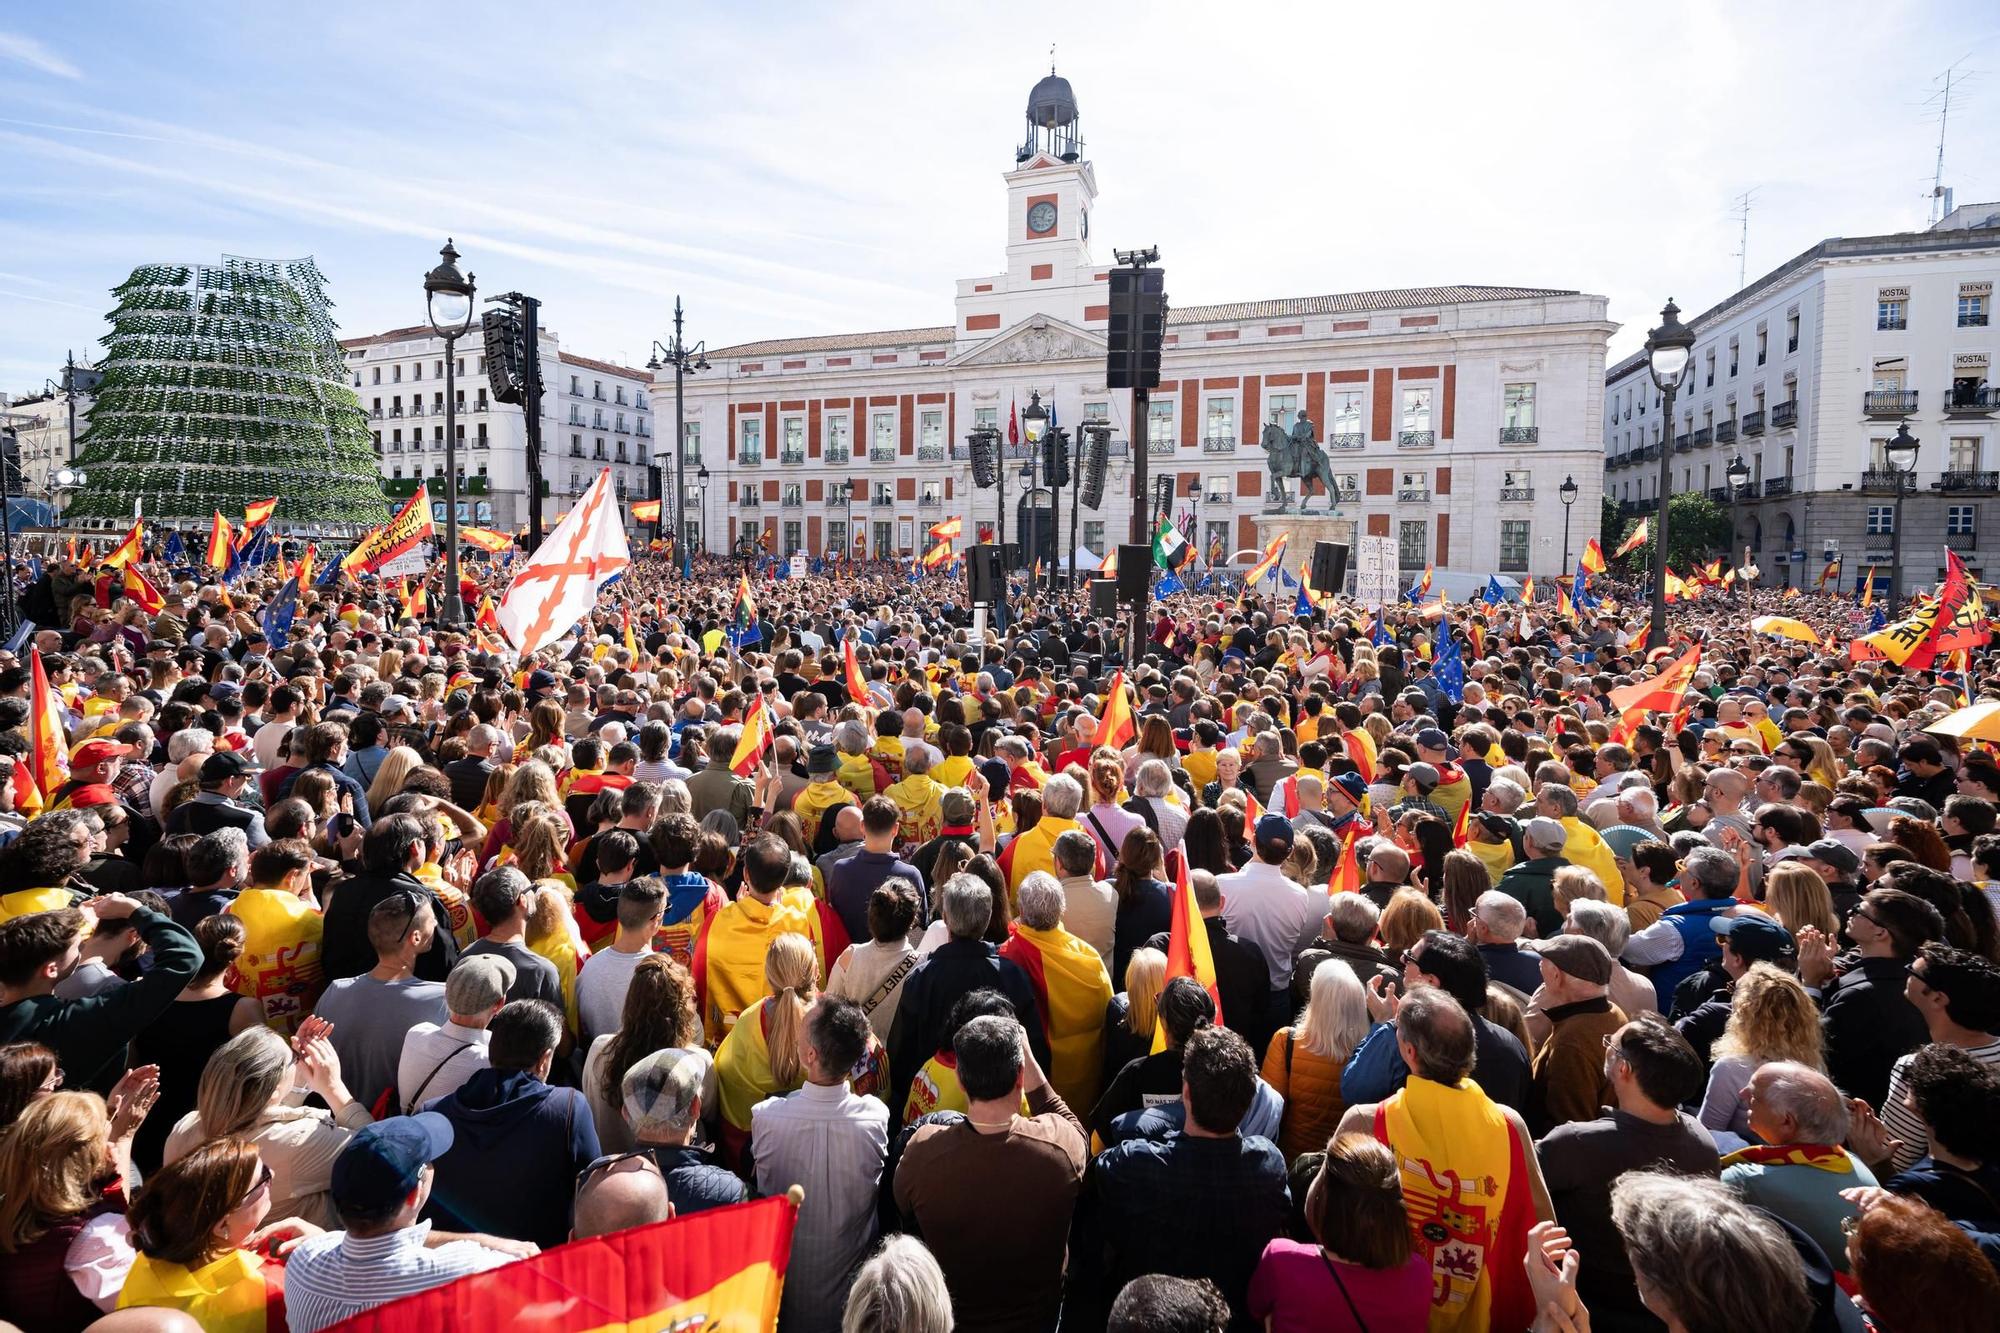 Manifestació contra l'amnistia a Madrid, en fotos